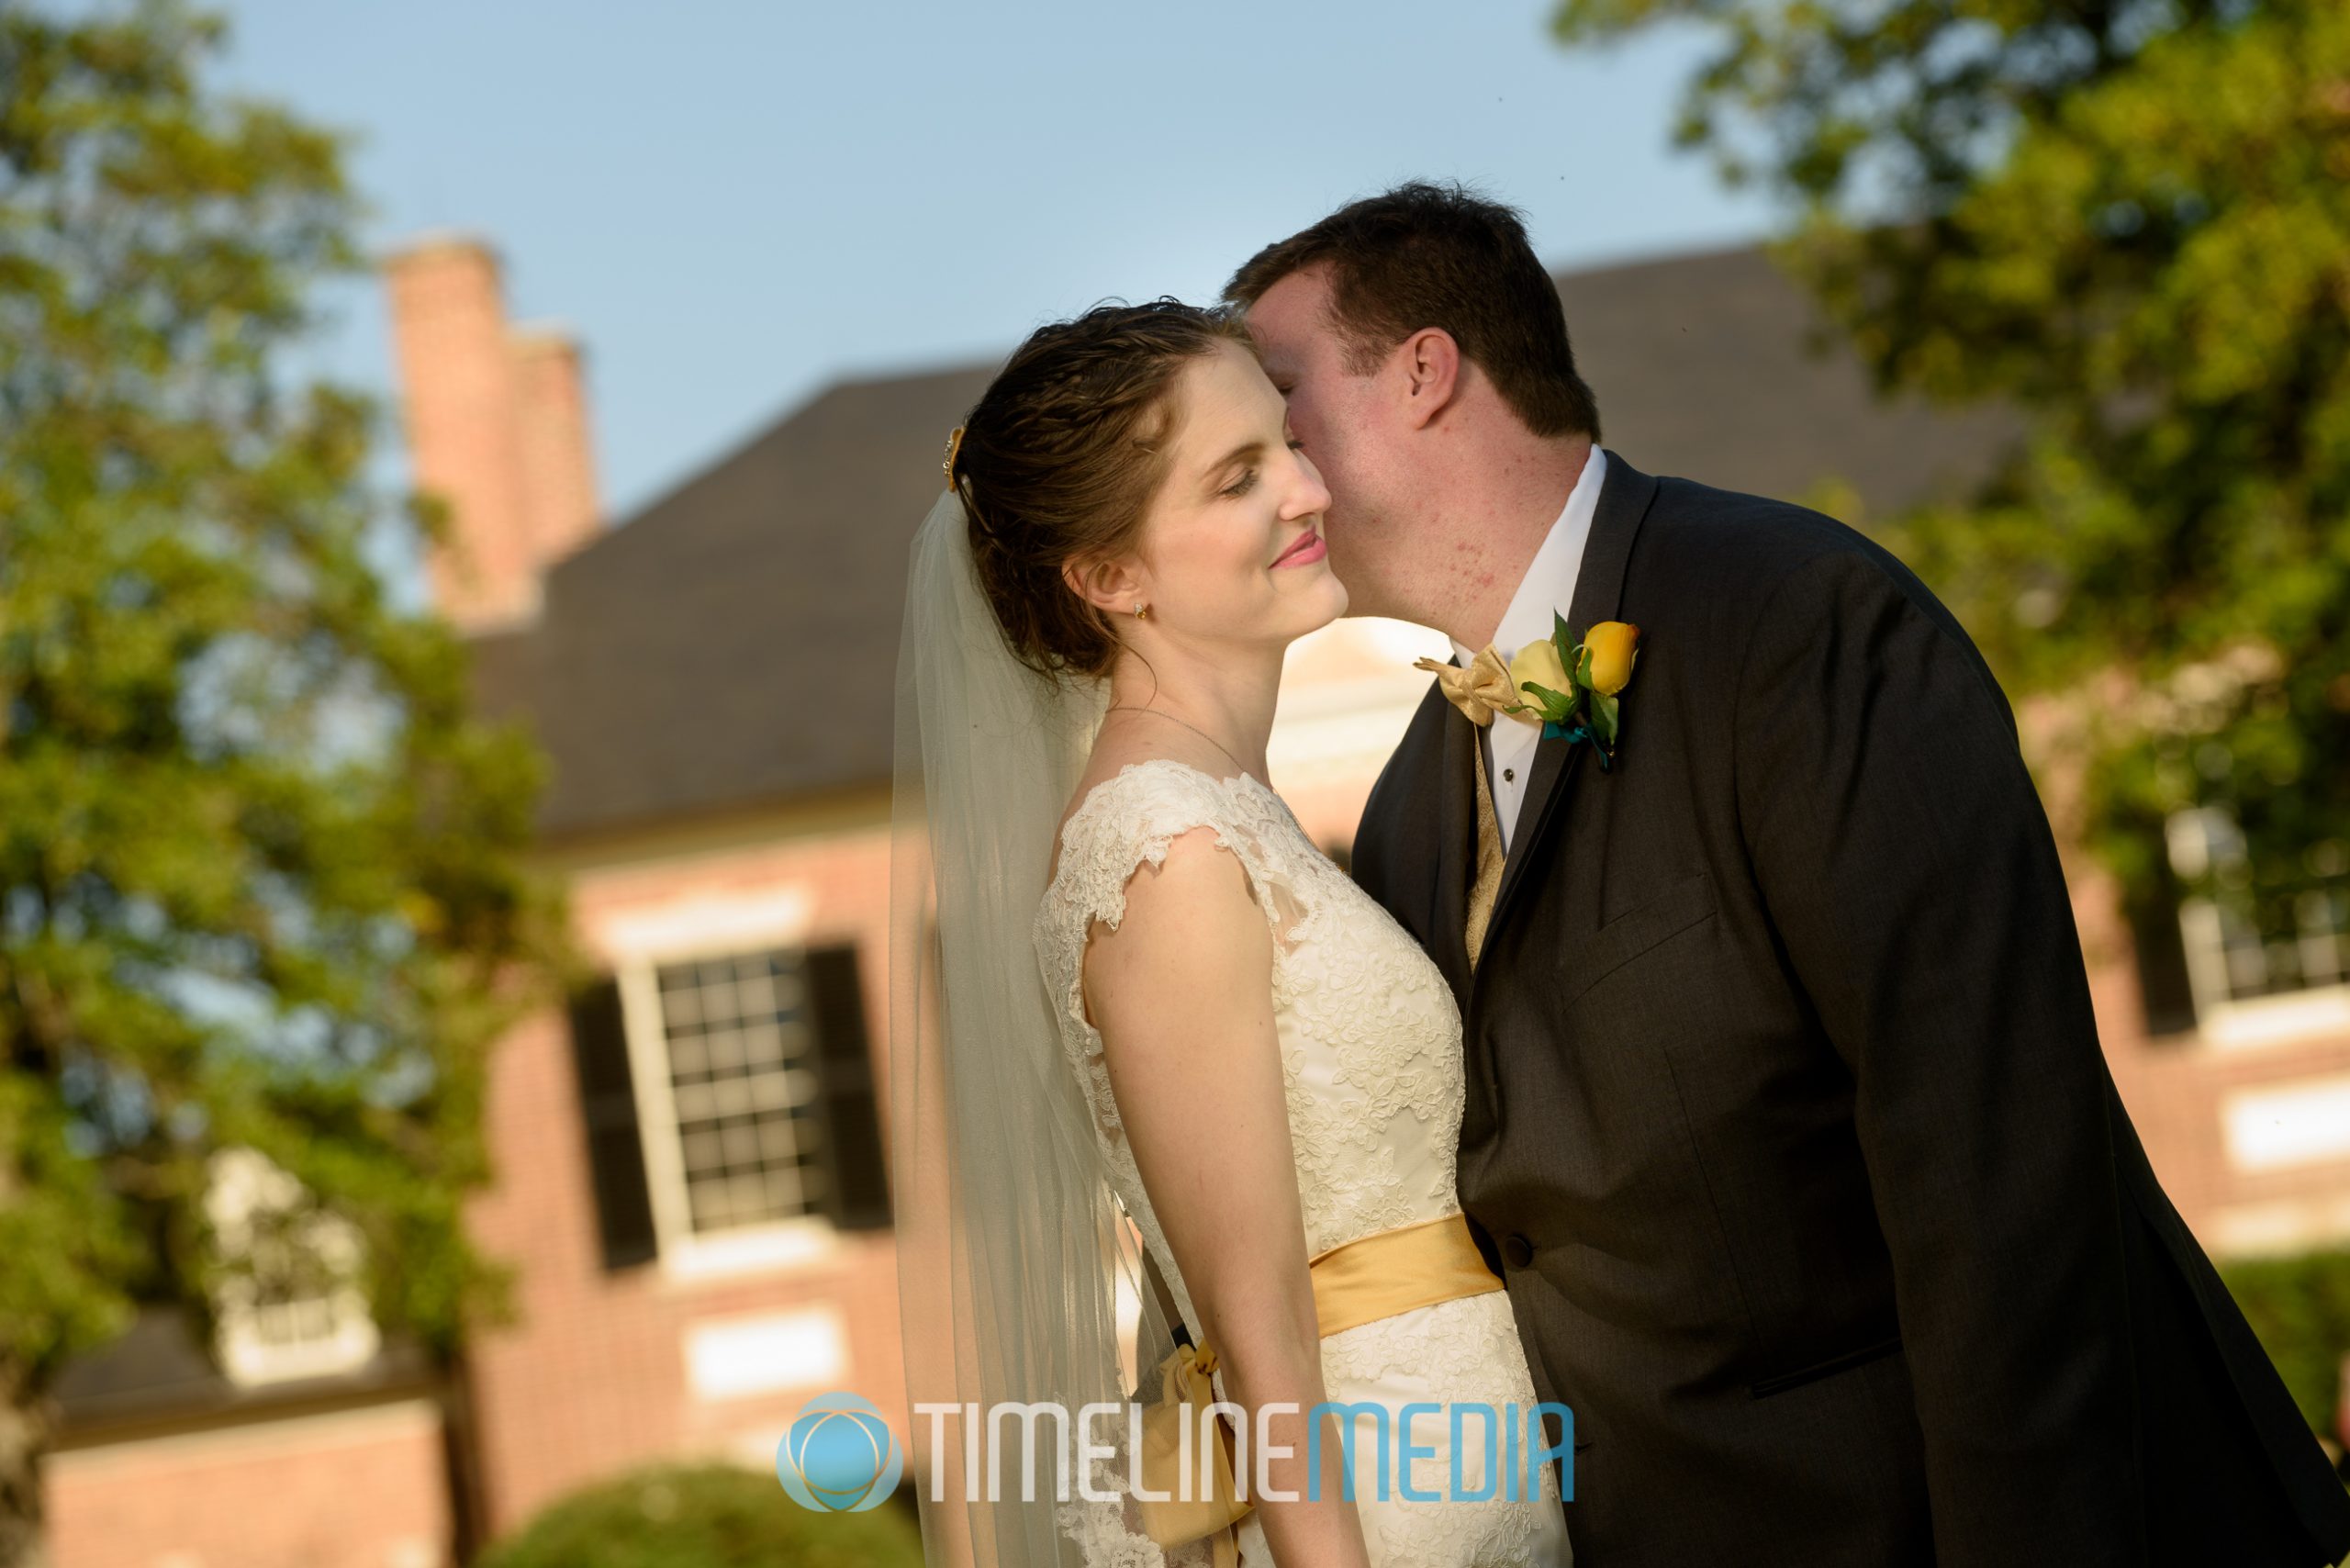 Woodlawn Plantation and wedding couple ©TimeLine Media